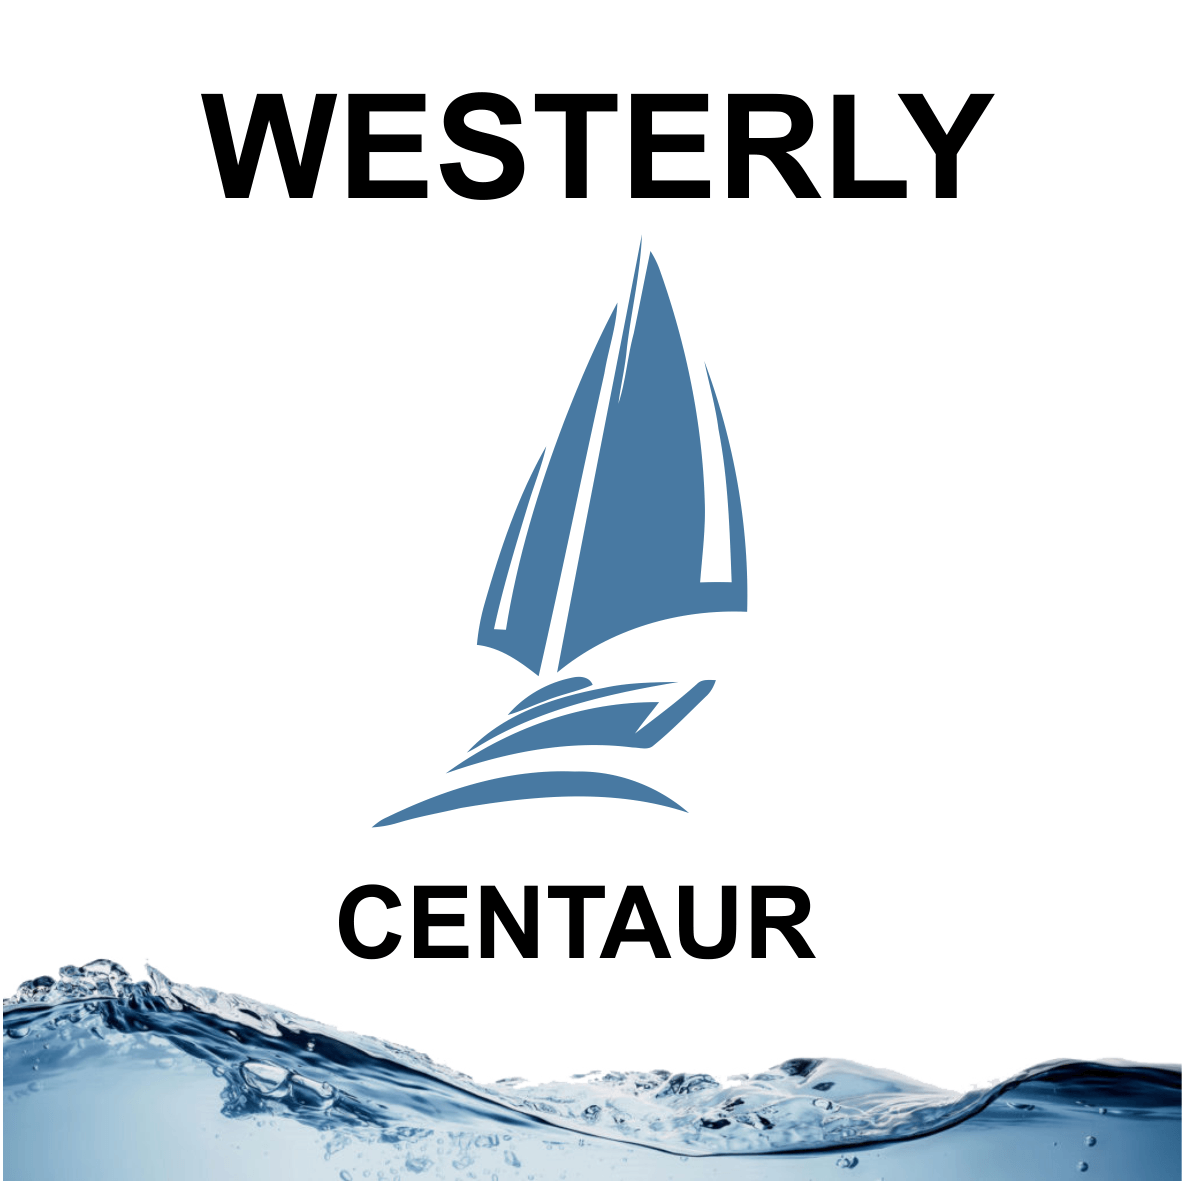 Westerly Centaur